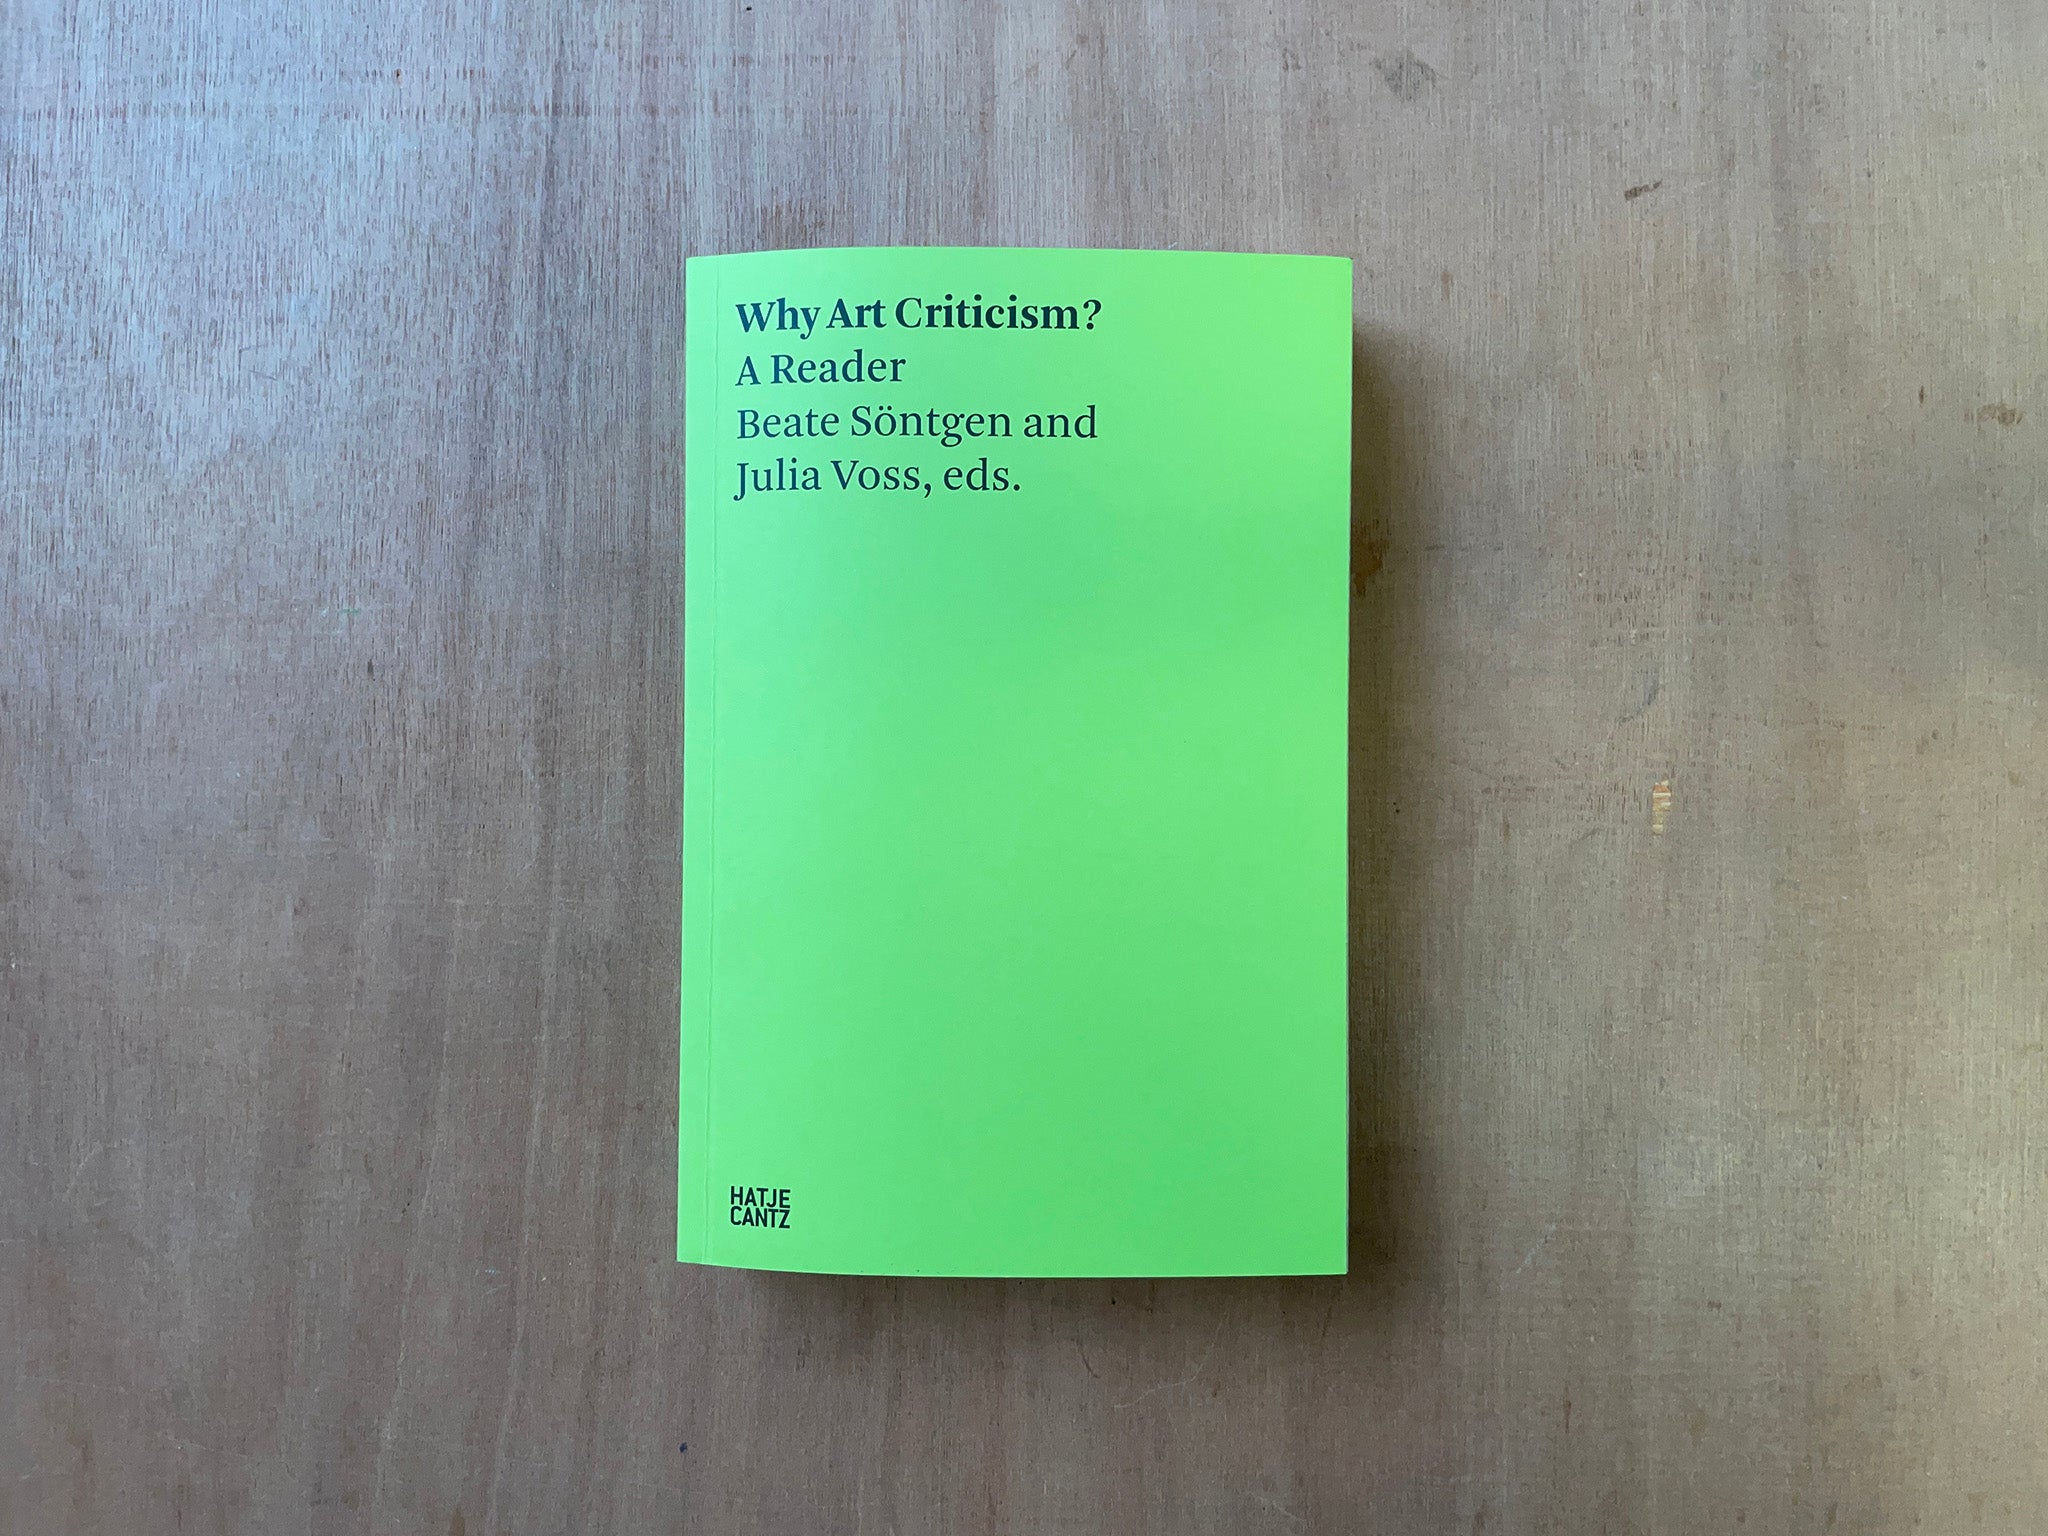 WHY ART CRITICISM? A READER Ed. by Beate Söntgen & Julia Voss